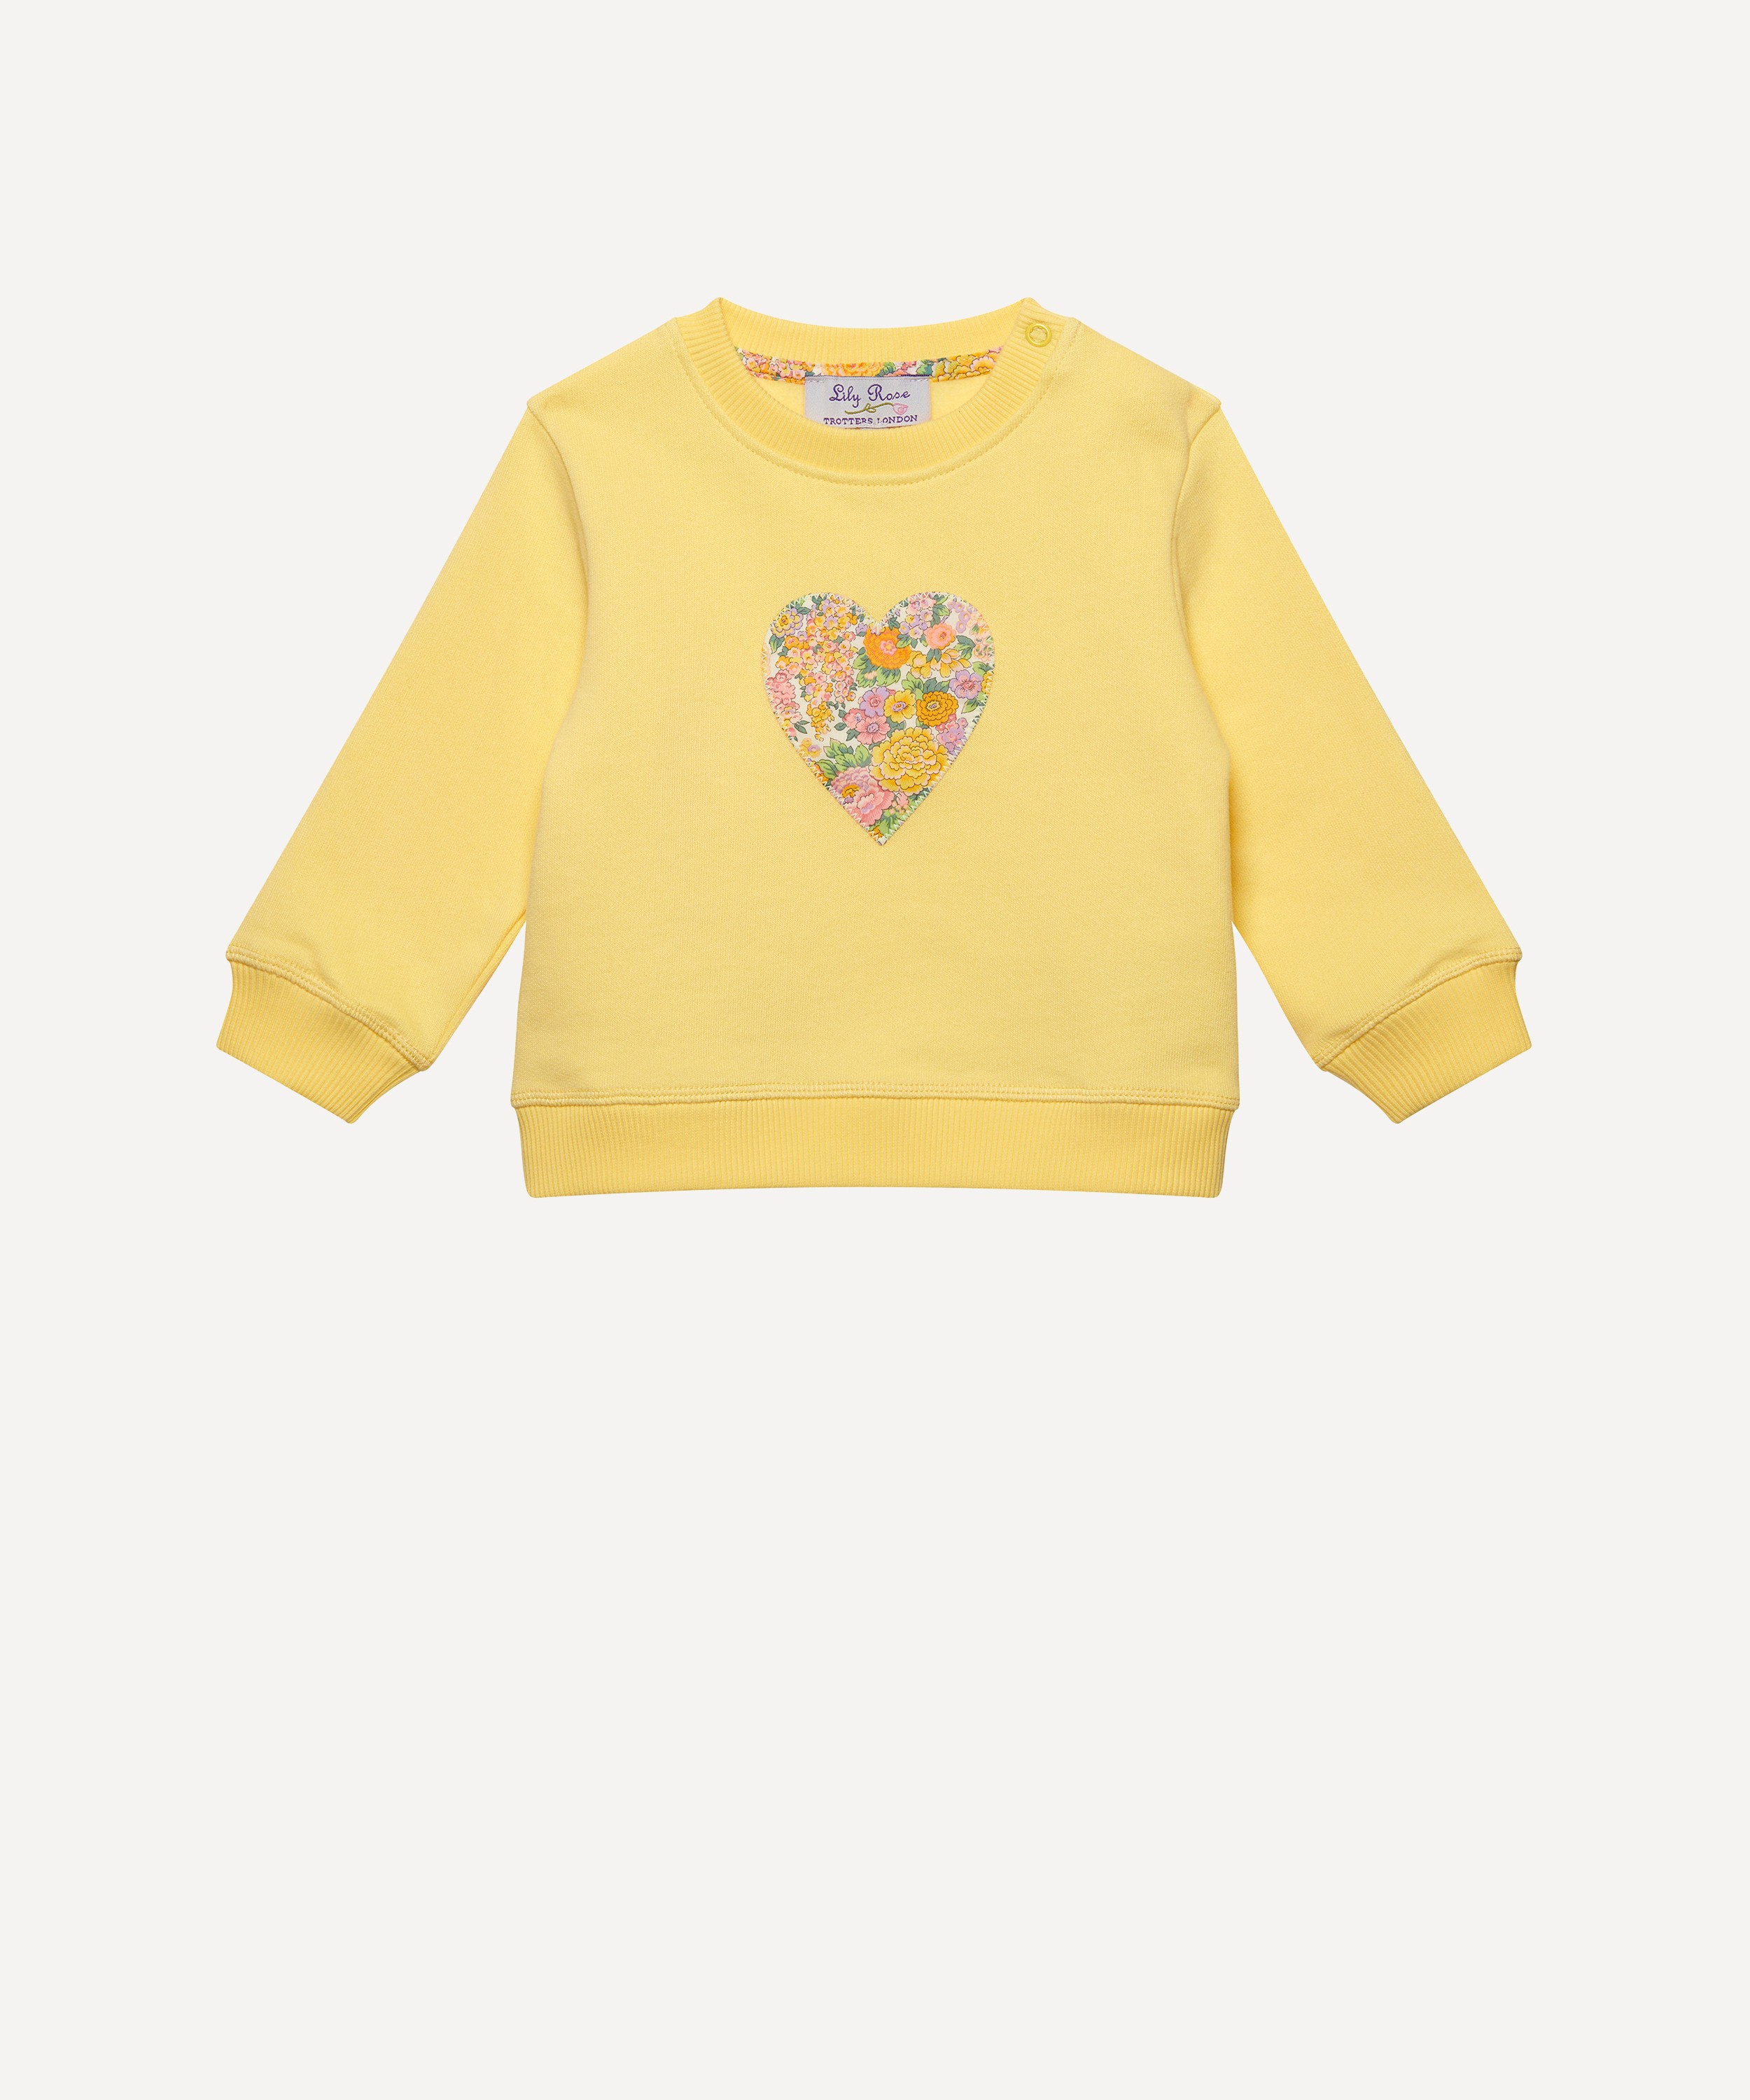 Trotters - Elysian Day Heart Sweatshirt 3-24 Months